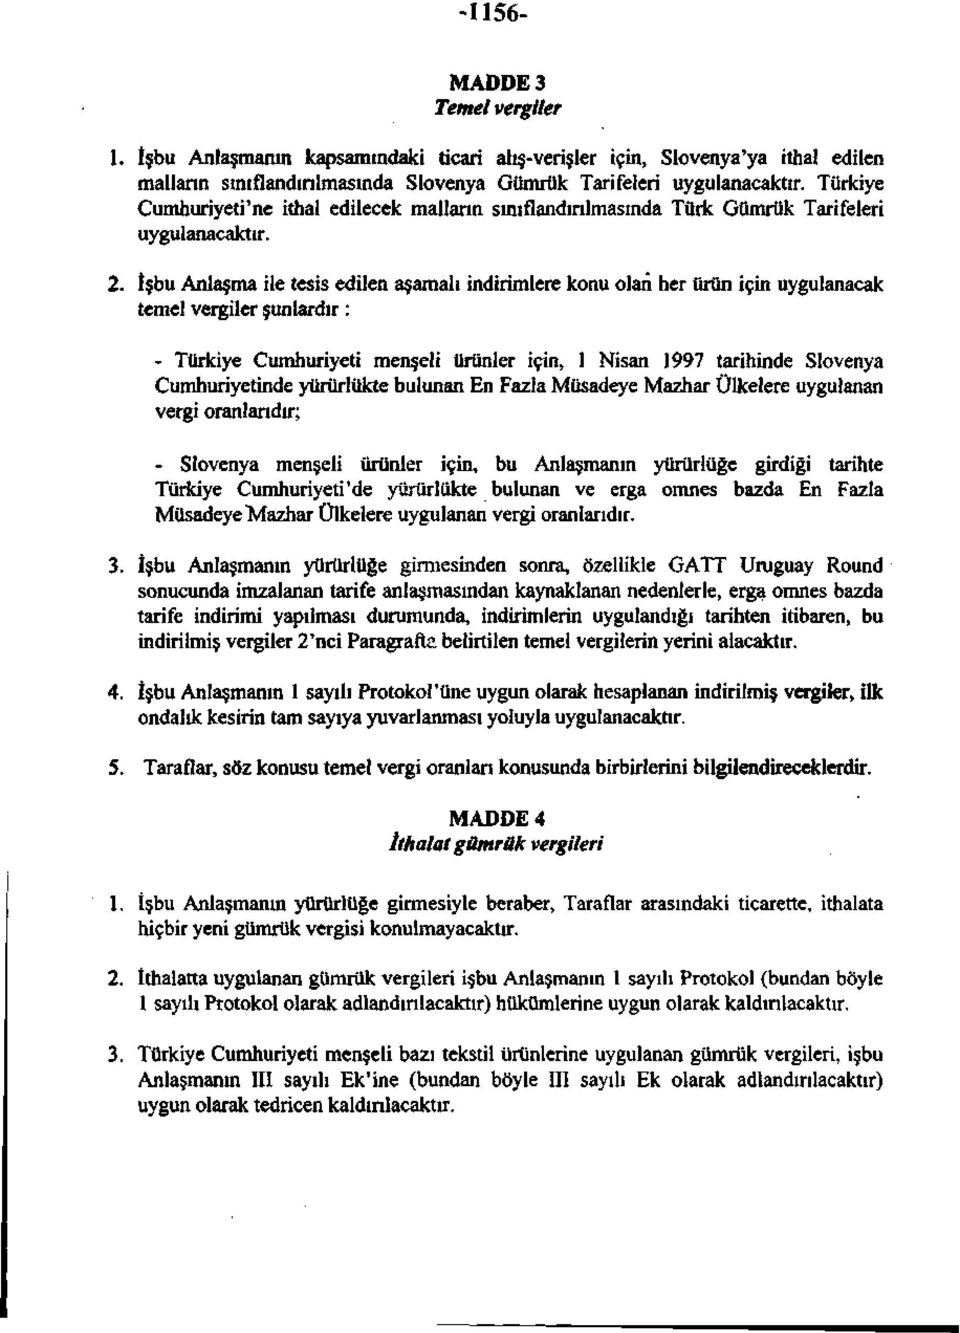 İşbu Anlaşma ile tesis edilen aşamalı indirimlere konu olan her ürün için uygulanacak temel vergiler şunlardır: - Türkiye Cumhuriyeti menşeli ürünler için, 1 Nisan 1997 tarihinde Slovenya